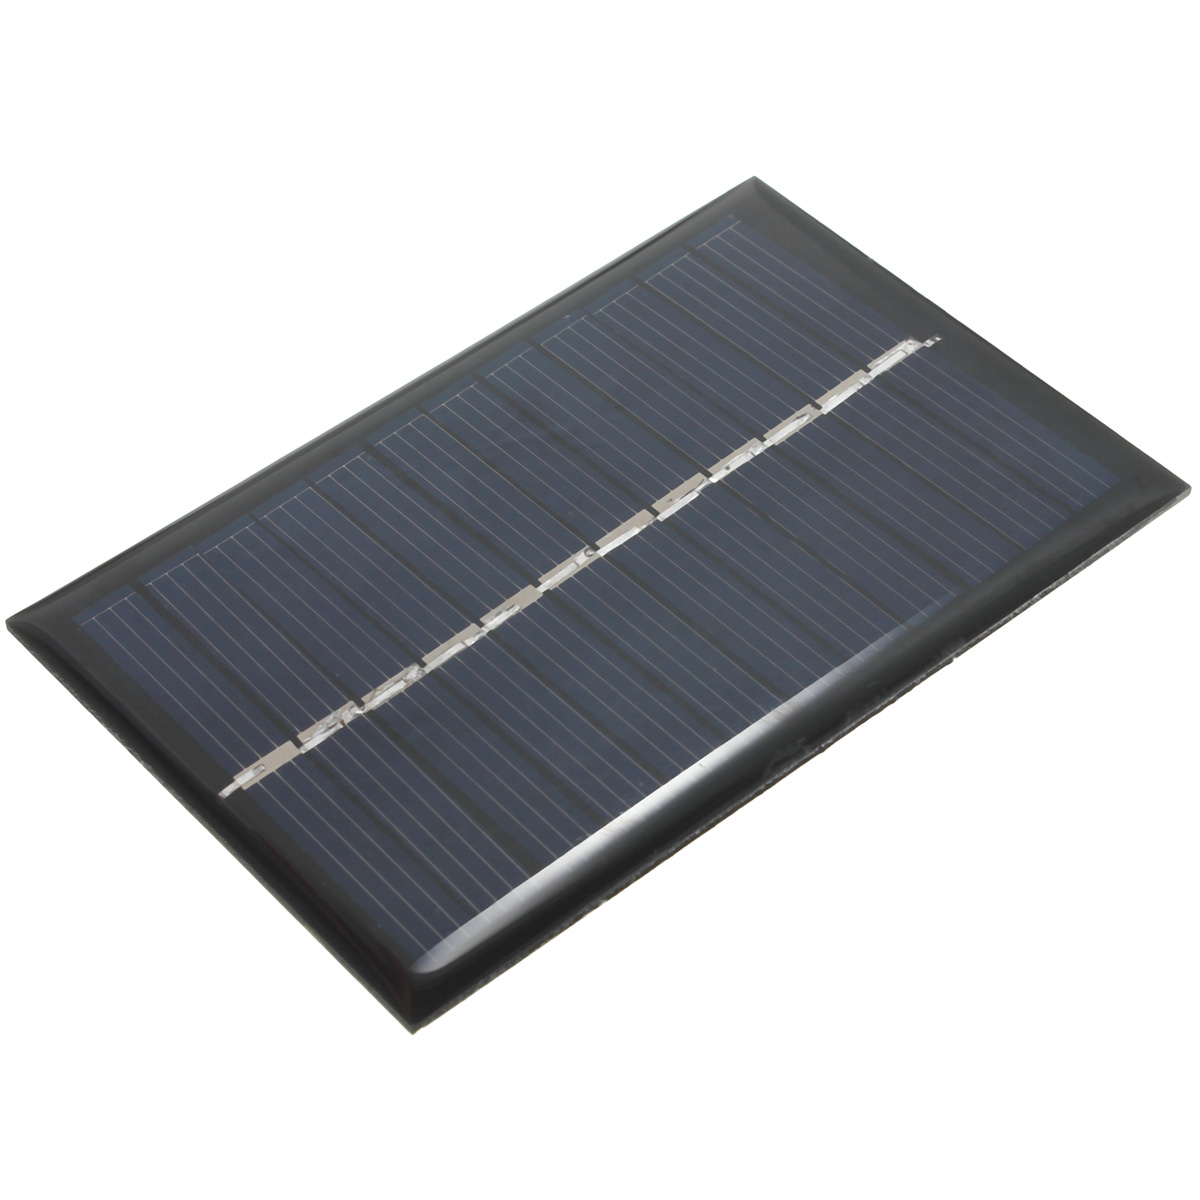 

3PCS 6PCS 6V 100mA 0.6W Поликристаллическая мини-эпоксидная фотоэлектрическая панель Солнечная